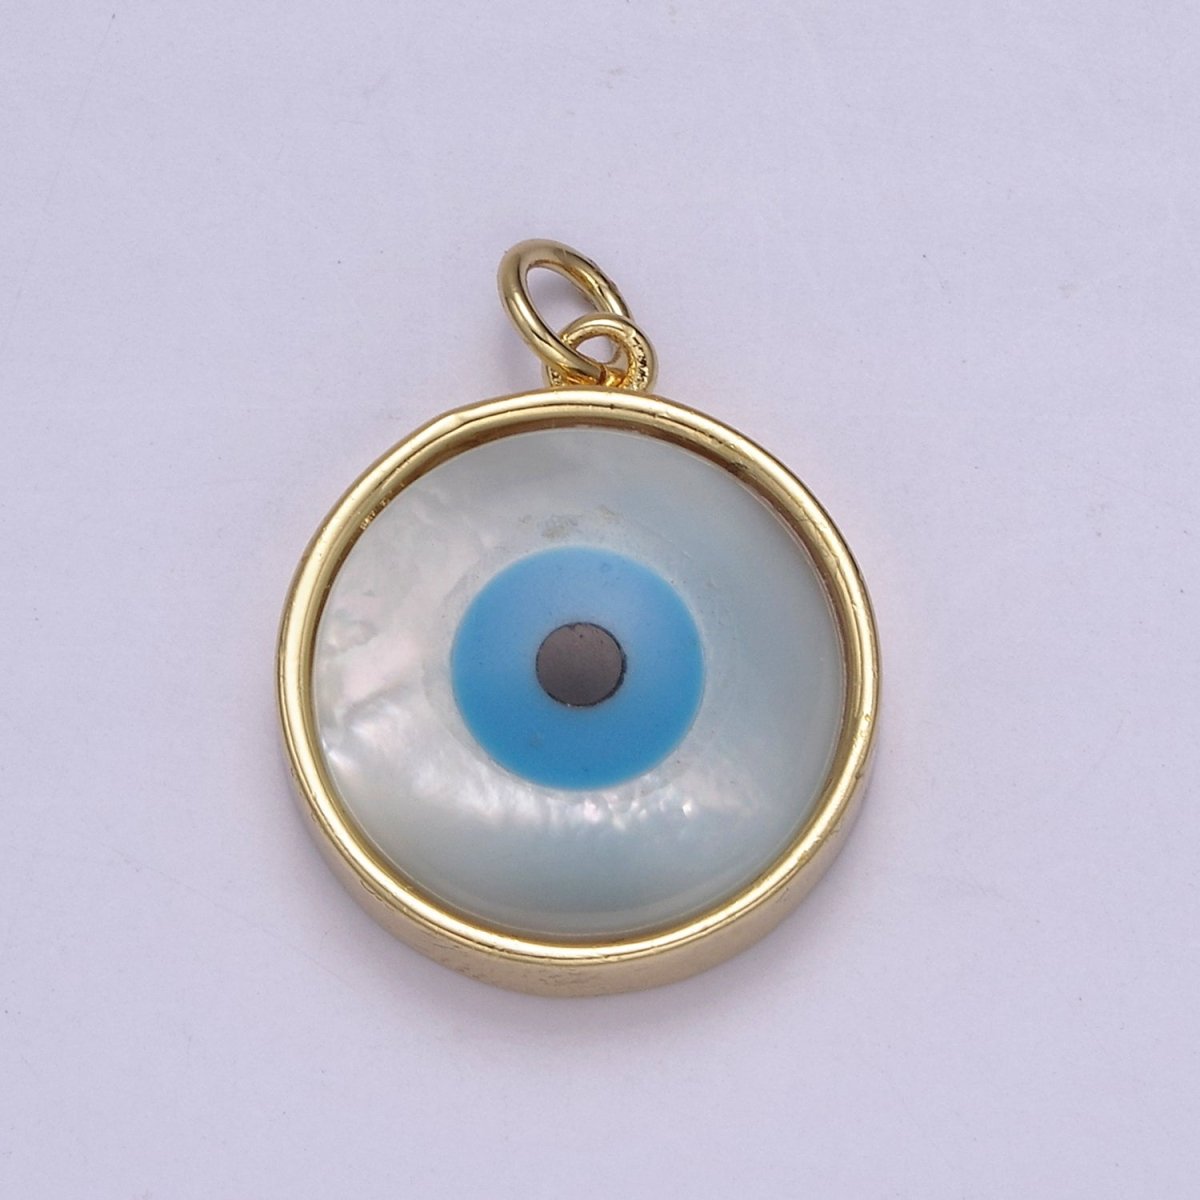 14k Gold Filled Rim Evil Eye Charm Pendant- Gold Round Evil Eye Charm with Natural White Shell Evil Eye N-833 - DLUXCA